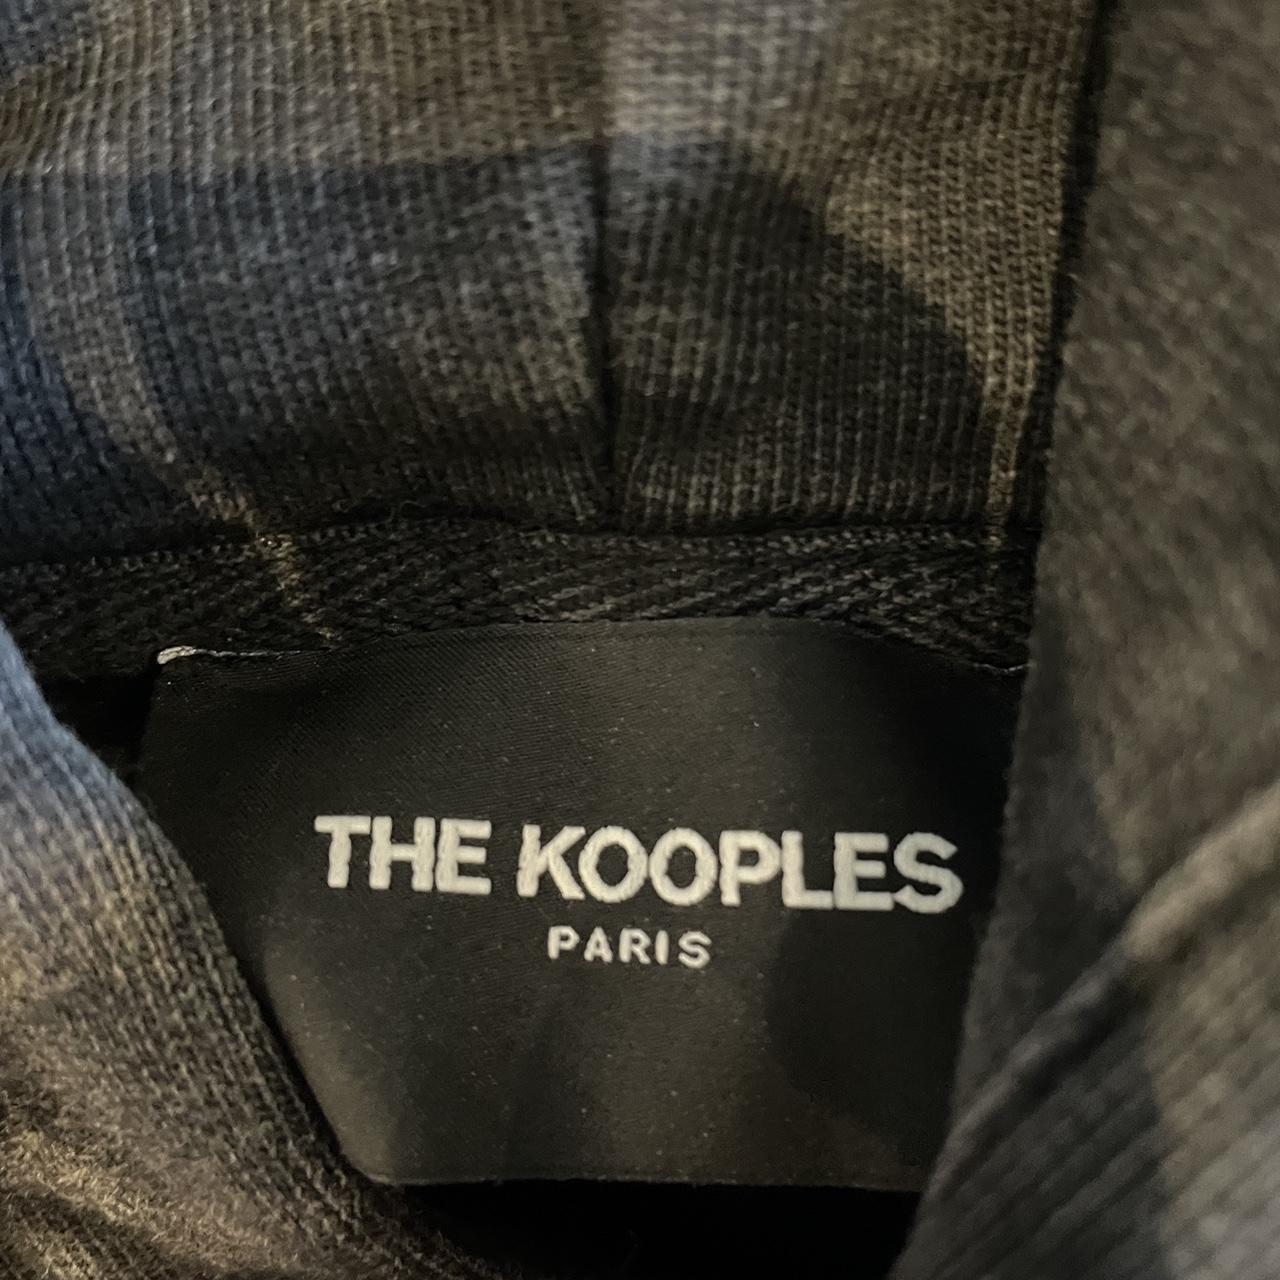 The Kooples Hoodie in Washed Black (Large) #Kooples... - Depop